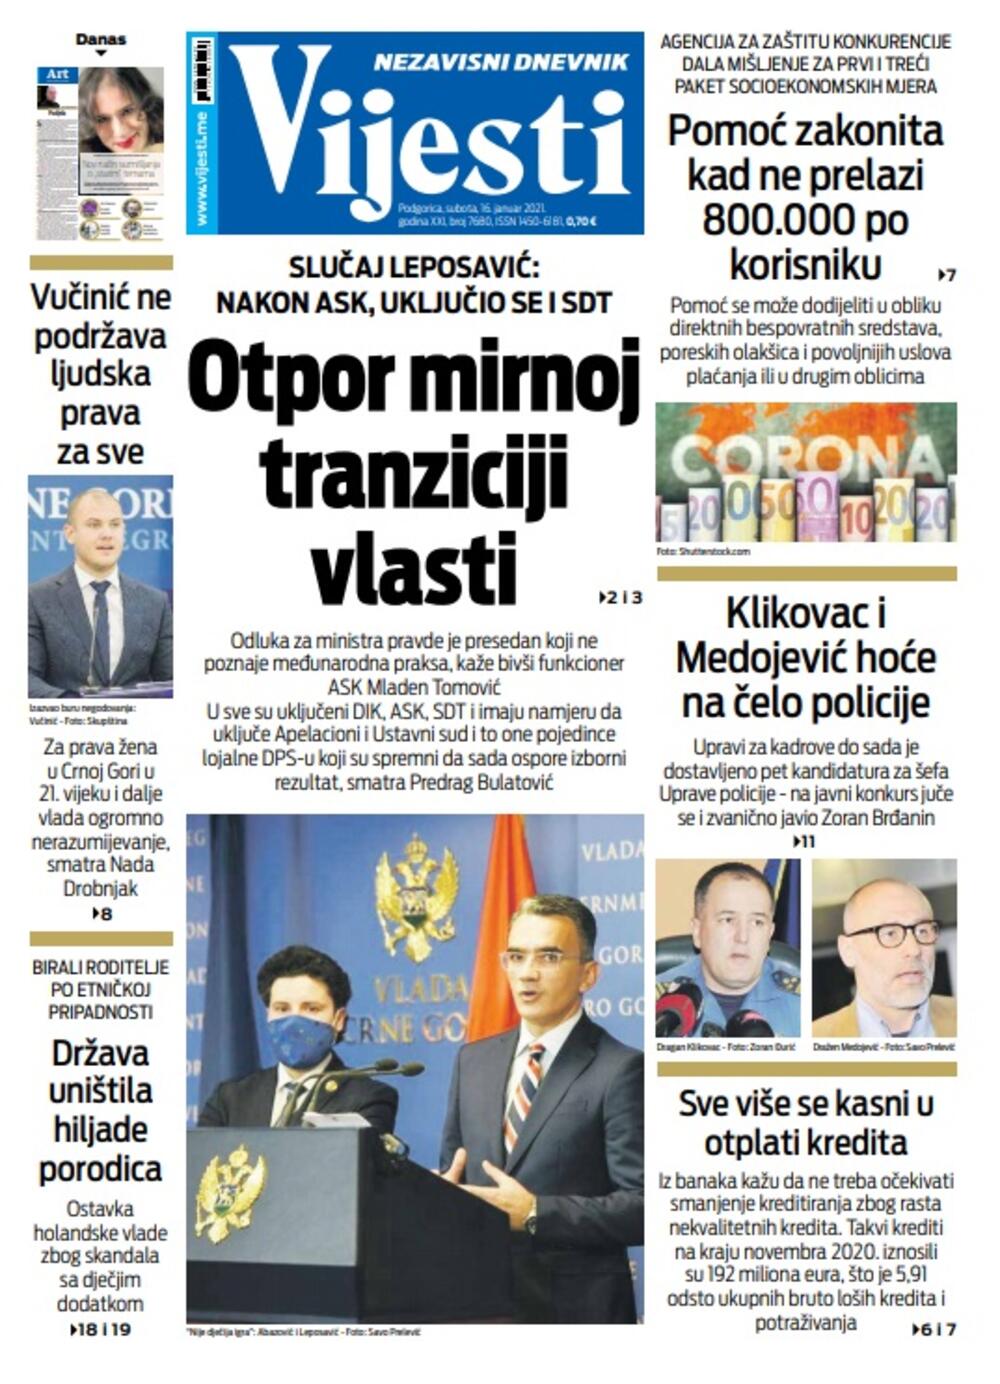 Naslovna strana "Vijesti" za 16. januar 2021., Foto: Vijesti